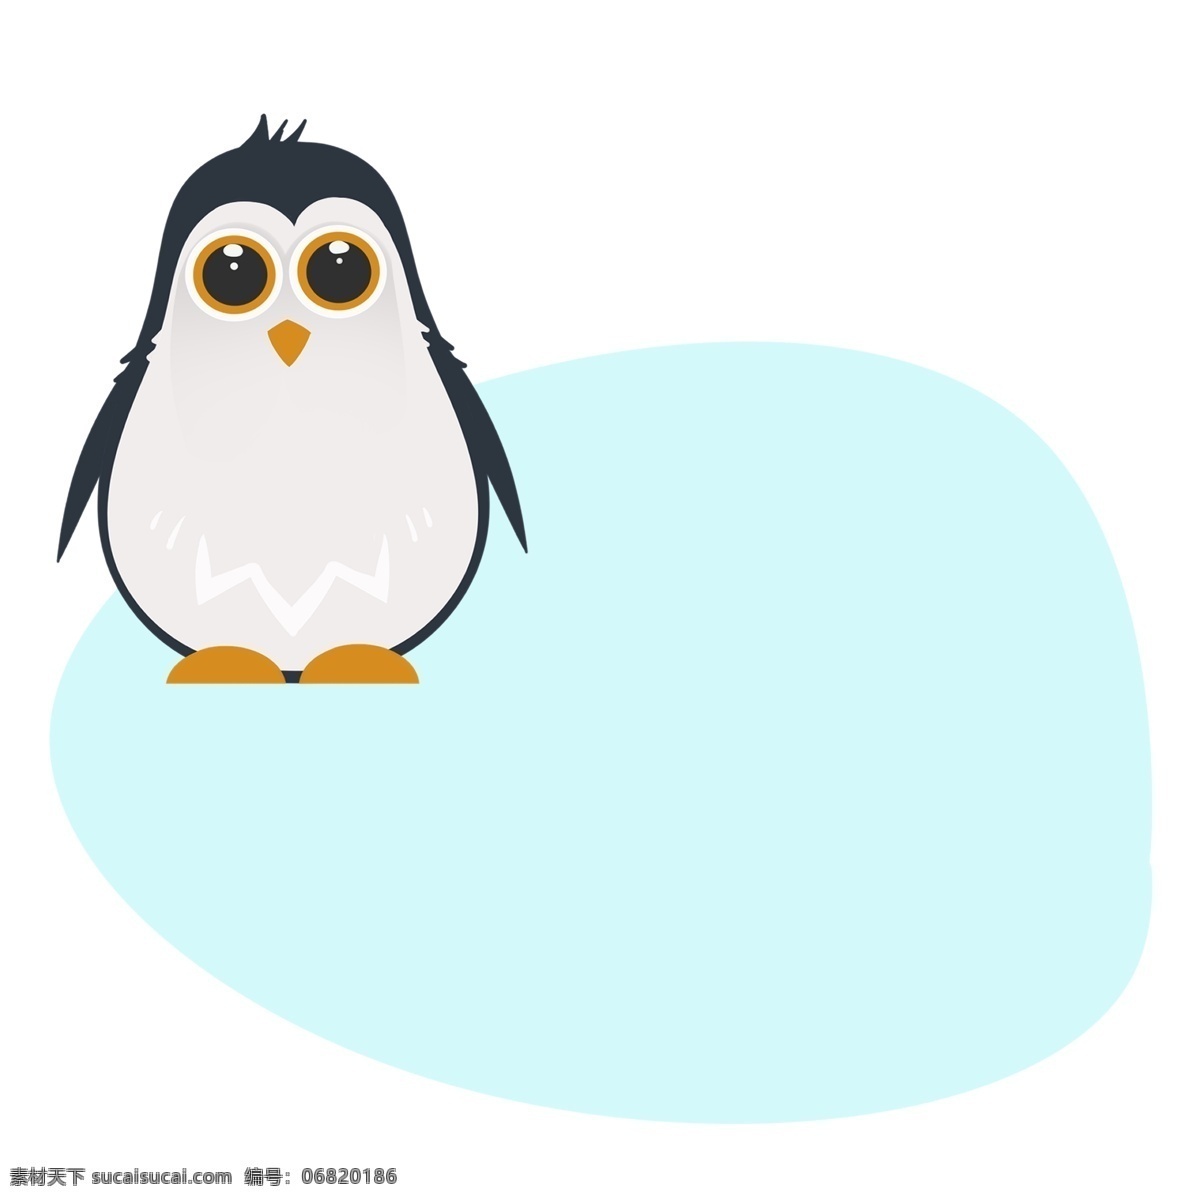 可爱 小企鹅 边框 插画 可爱的小企鹅 小企鹅边框 蓝色边框 创意边框 可爱的边框 手绘边框 边框装饰